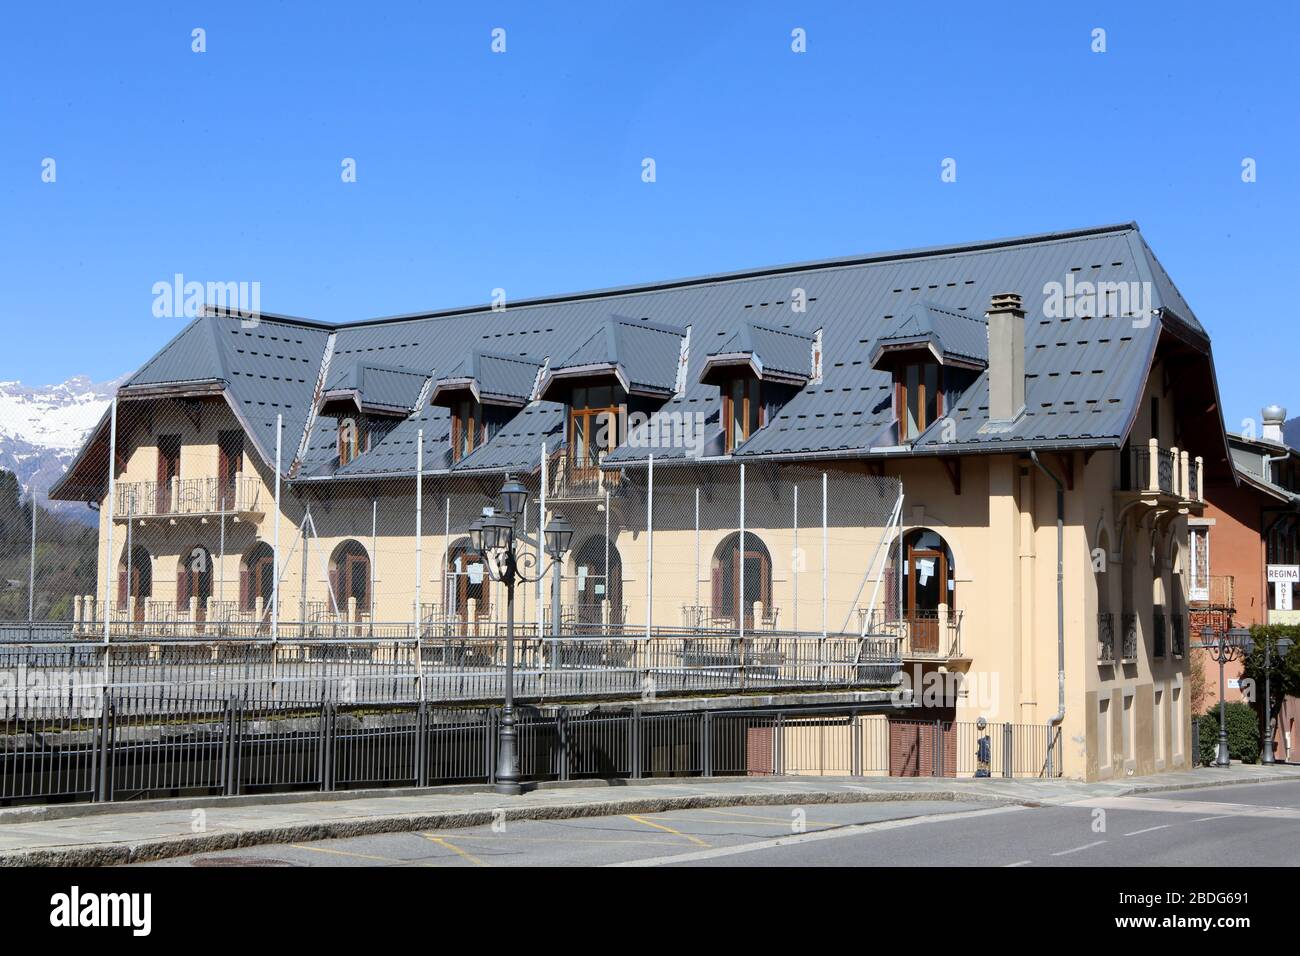 Collège de l'Assomption. Etablissement scolaire. Saint-Gervais-les-Bains. Haute-Savoie. France. Stock Photo